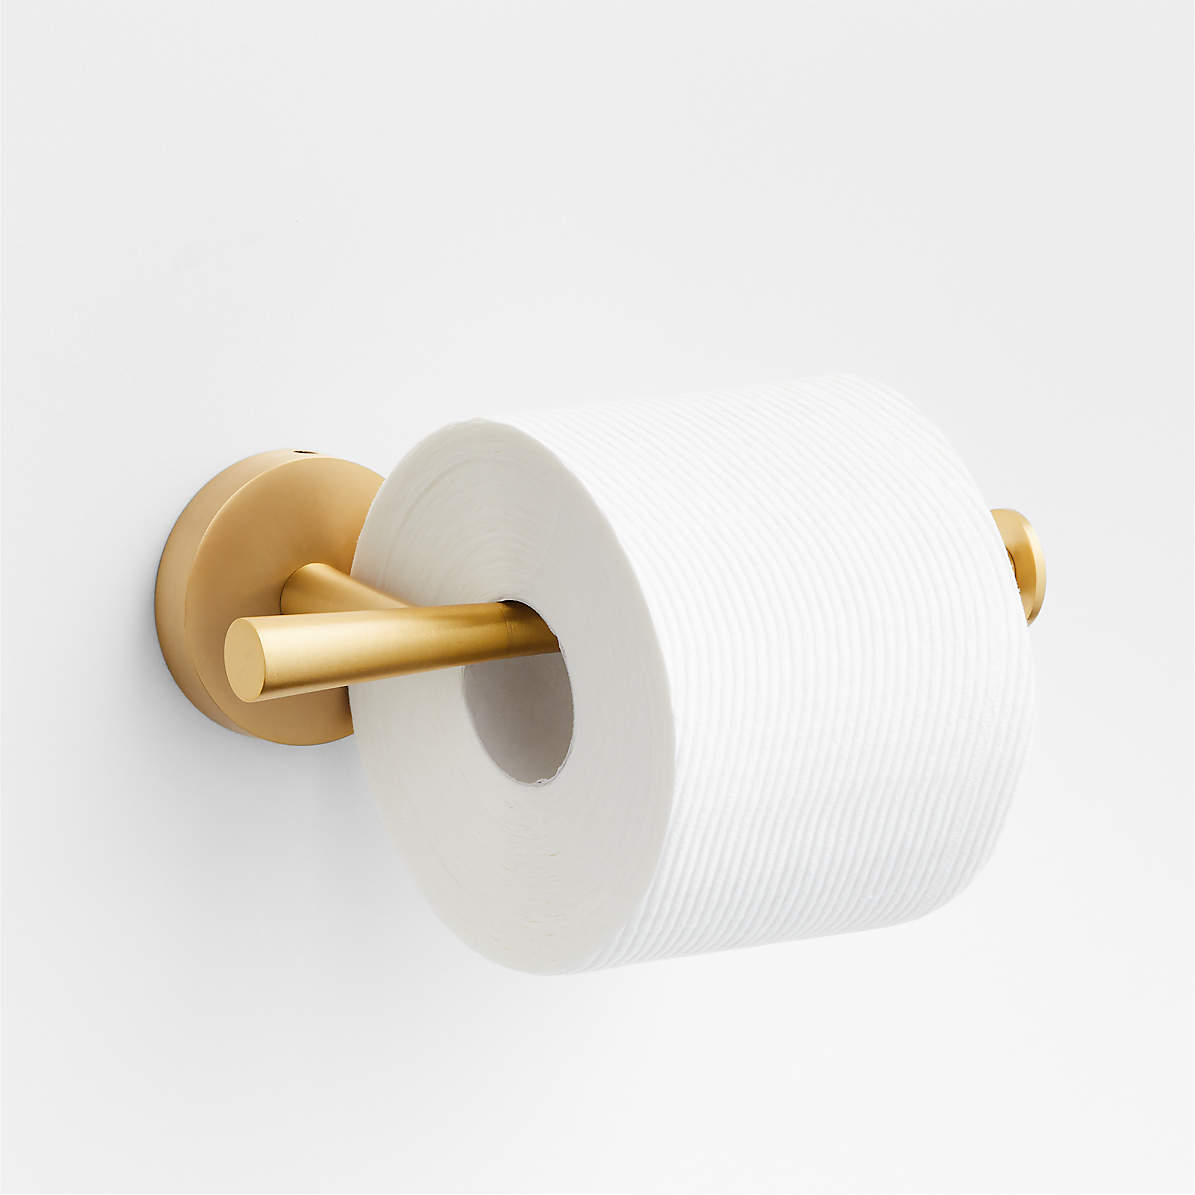 Modern Toilet Paper Holders